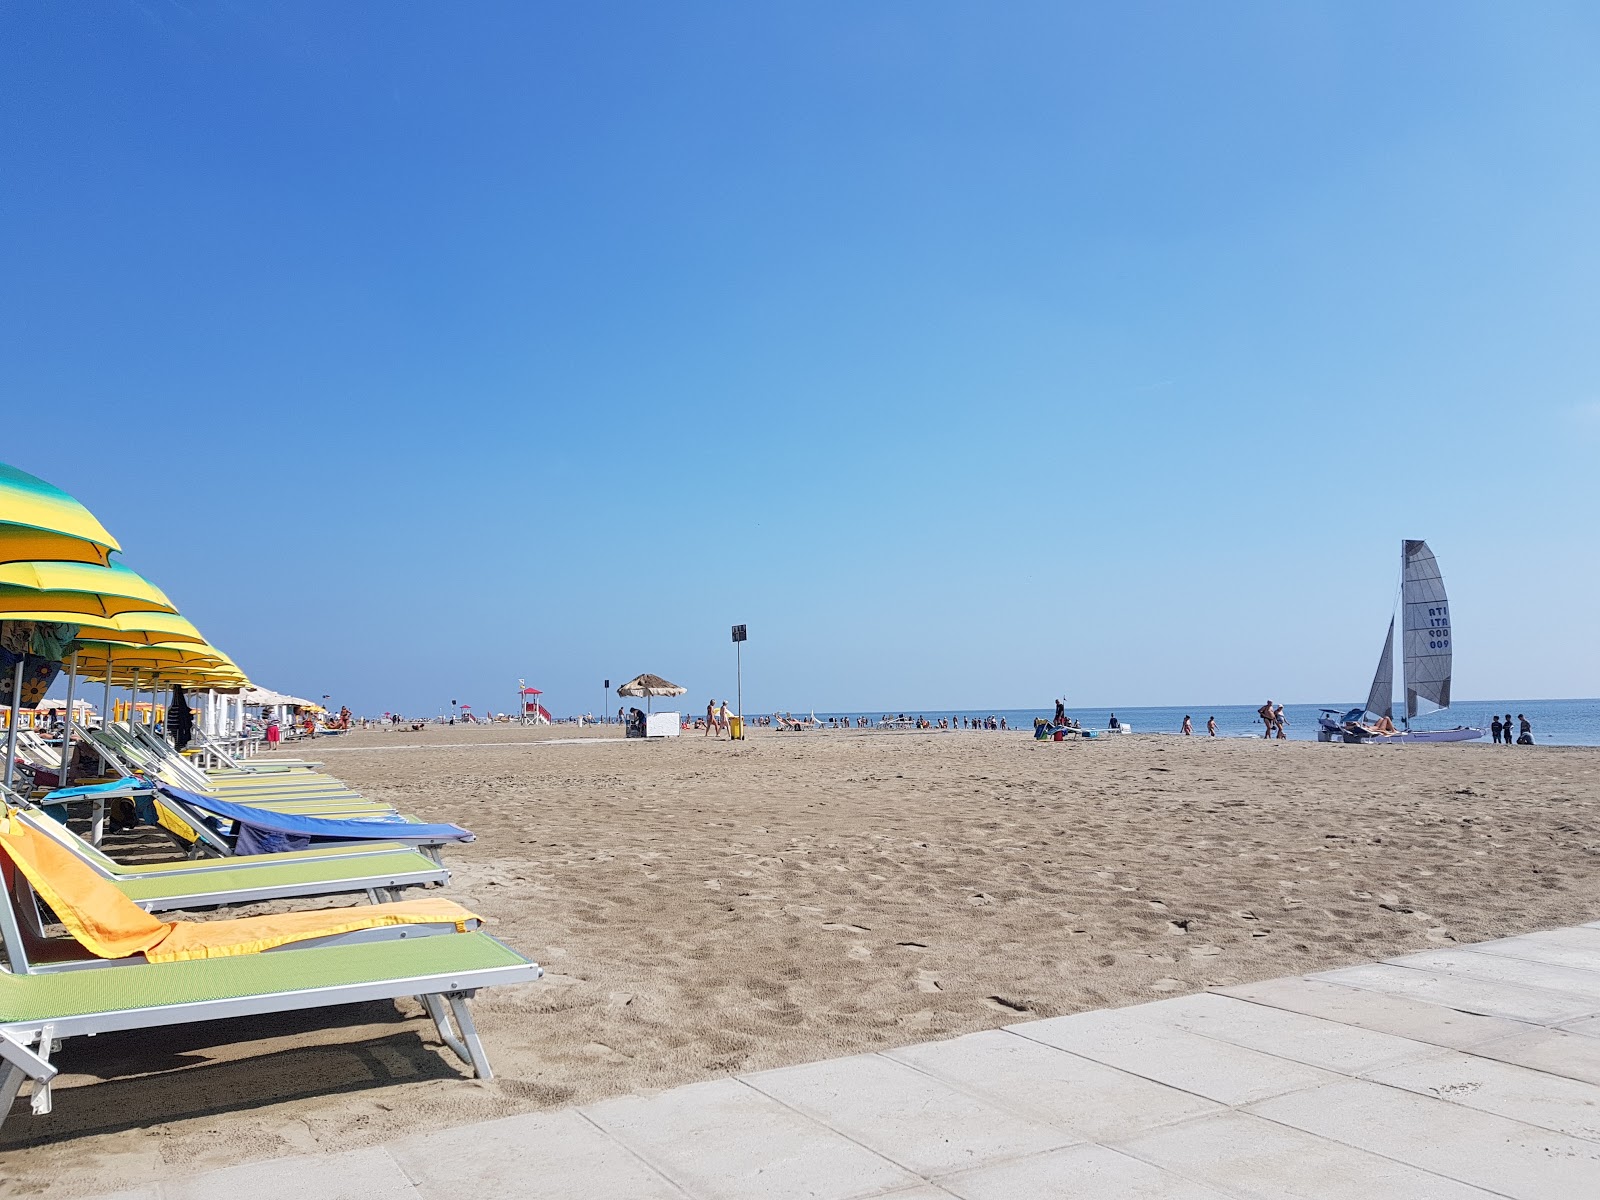 Foto de Spiaggia Lido Degli Estensi - recomendado para viajantes em família com crianças